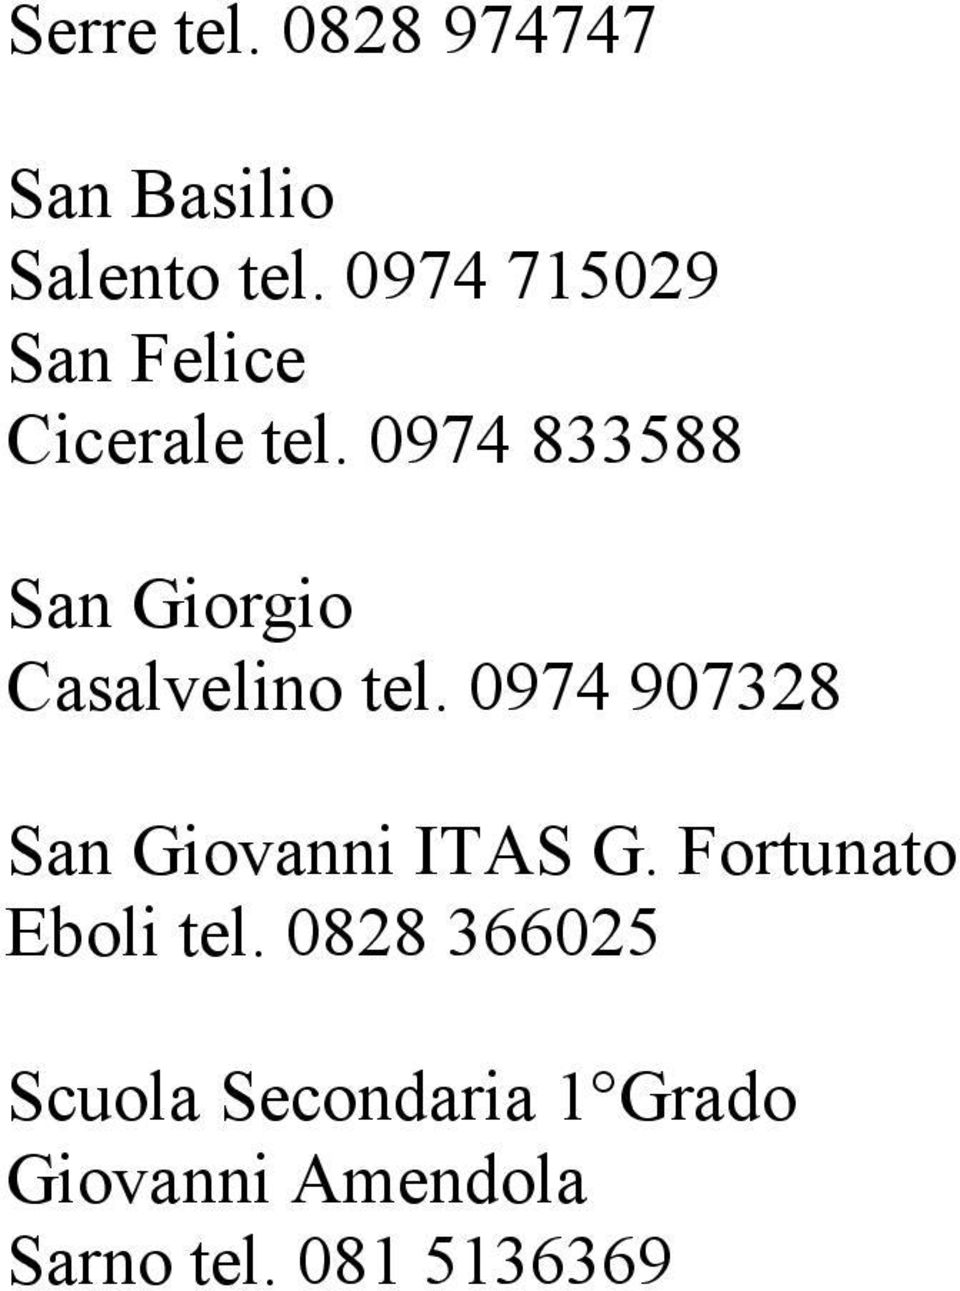 0974 833588 San Giorgio Casalvelino tel.